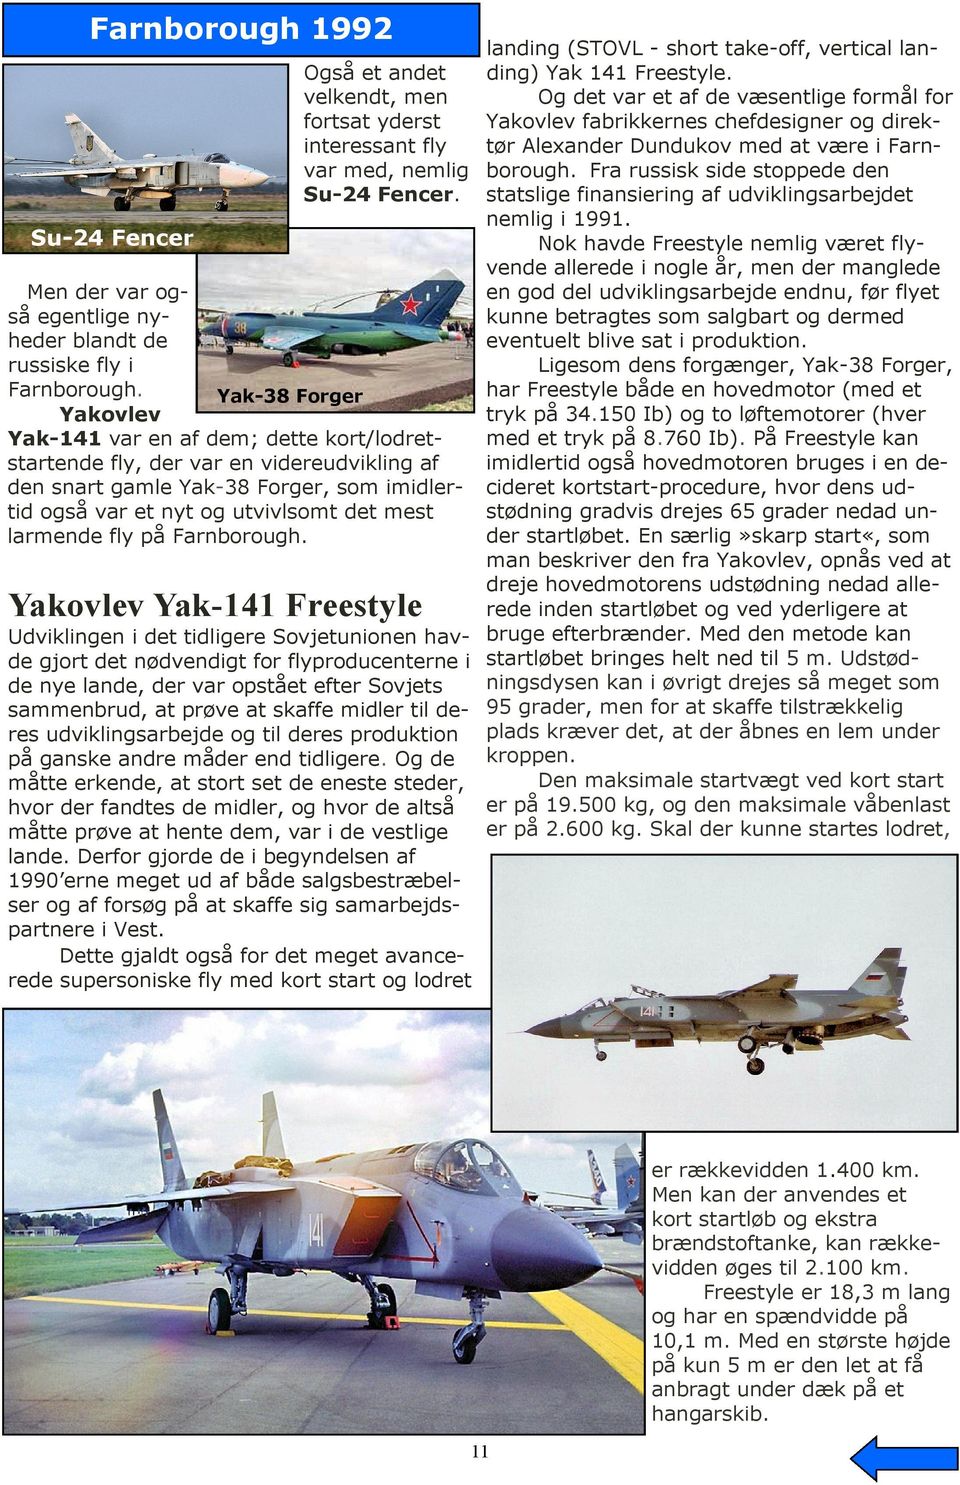 Yak-38 Forger Yakovlev Yak-141 var en af dem; dette kort/lodretstartende fly, der var en videreudvikling af den snart gamle Yak-38 Forger, som imidlertid også var et nyt og utvivlsomt det mest